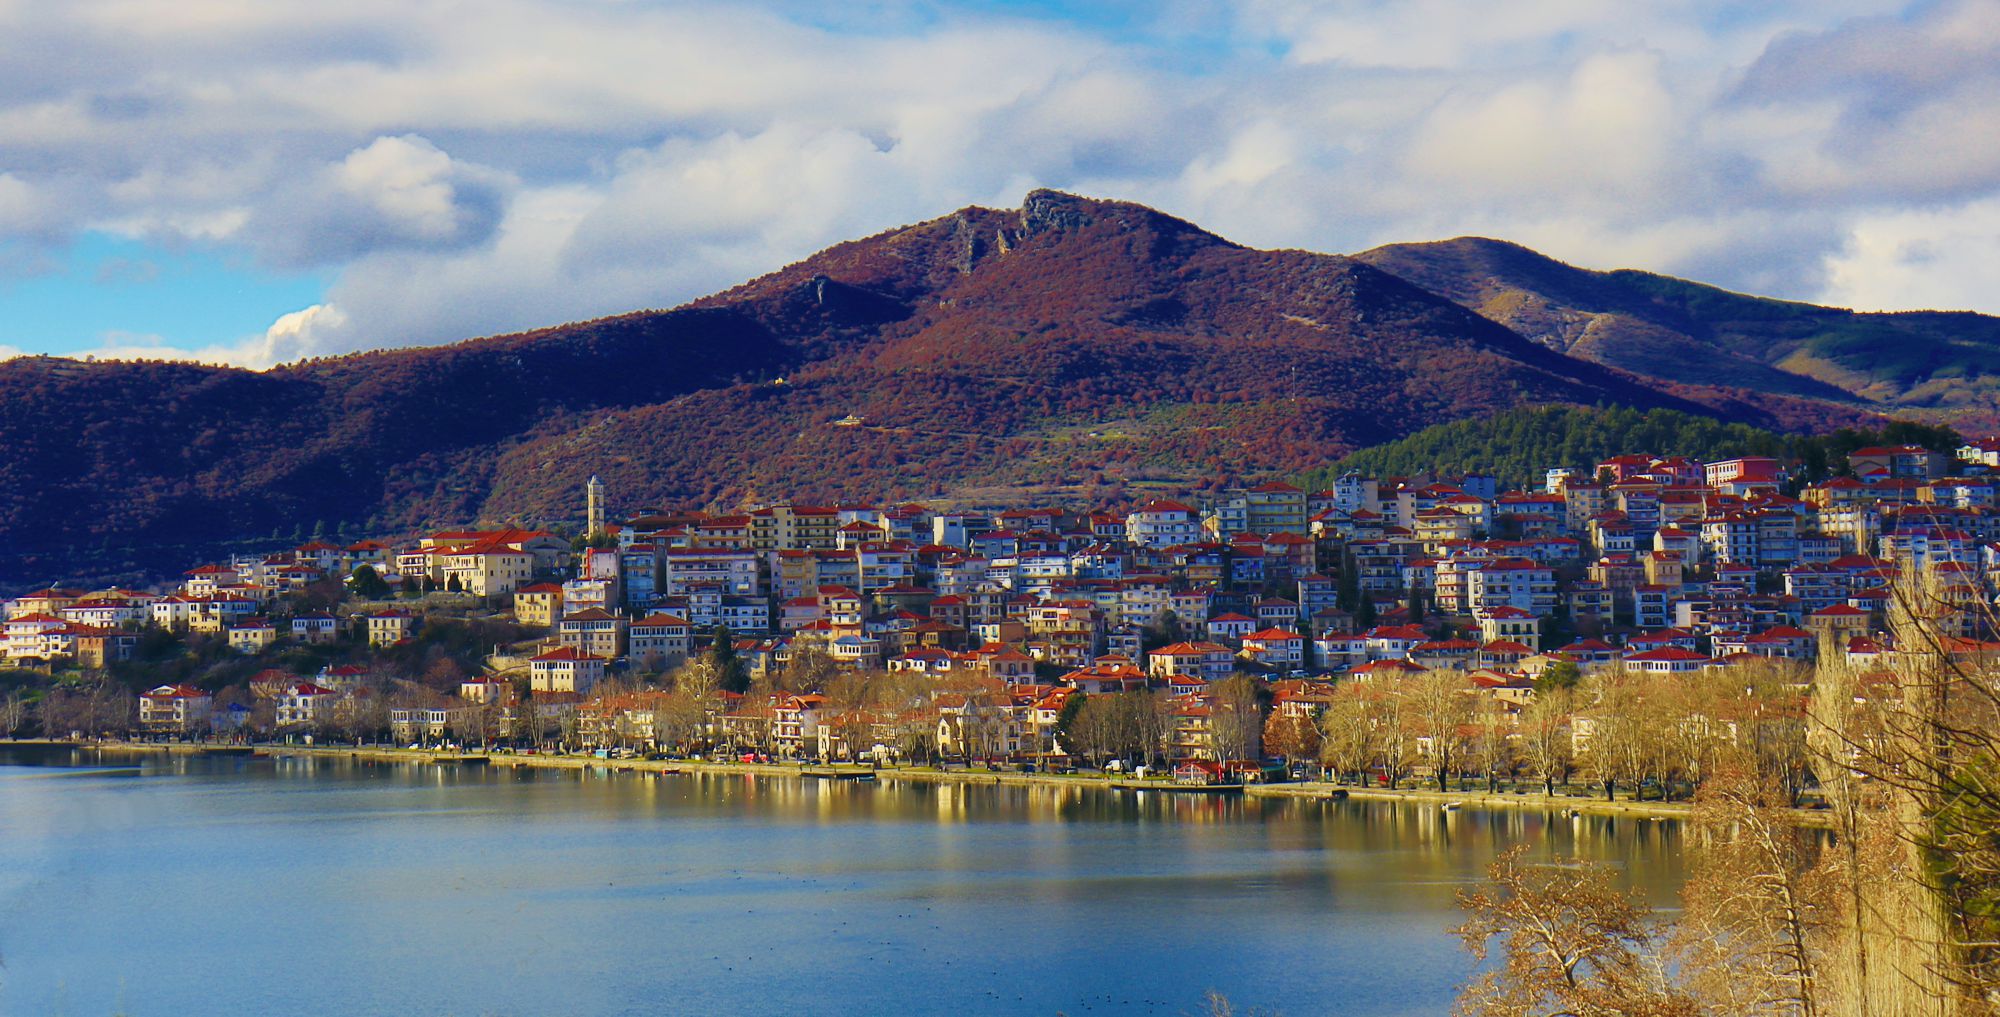 Τα βουνά της Καστοριάς: Η Ψαλίδα πάνω από την πόλη της Καστοριάς και τη λίμνη Ορεστιάδα